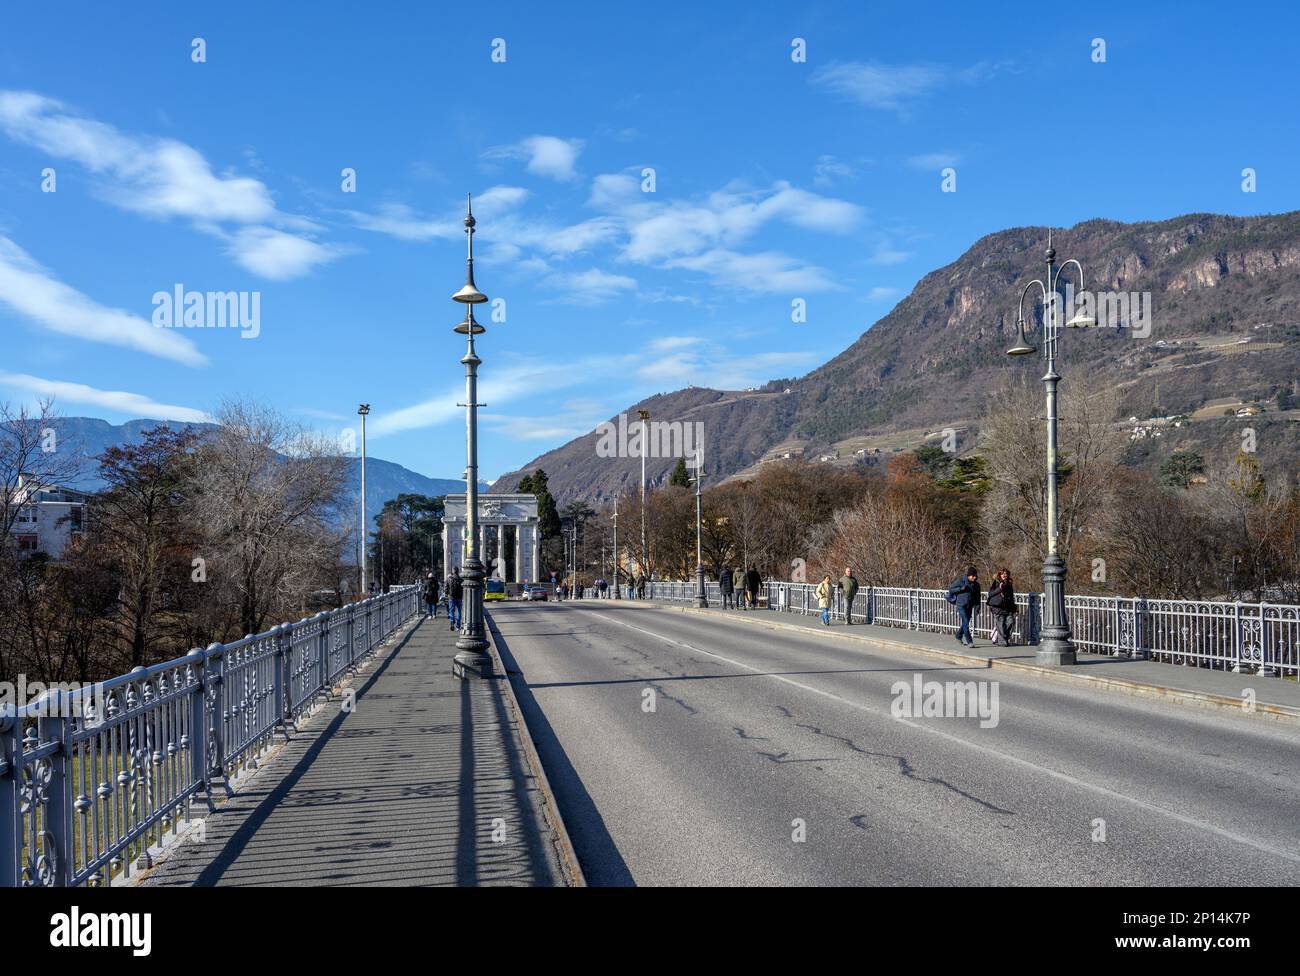 View over Ponte Talvera looking towards the Victory Monument (Monumento alla Vittoria), Bolzano, Italy Stock Photo